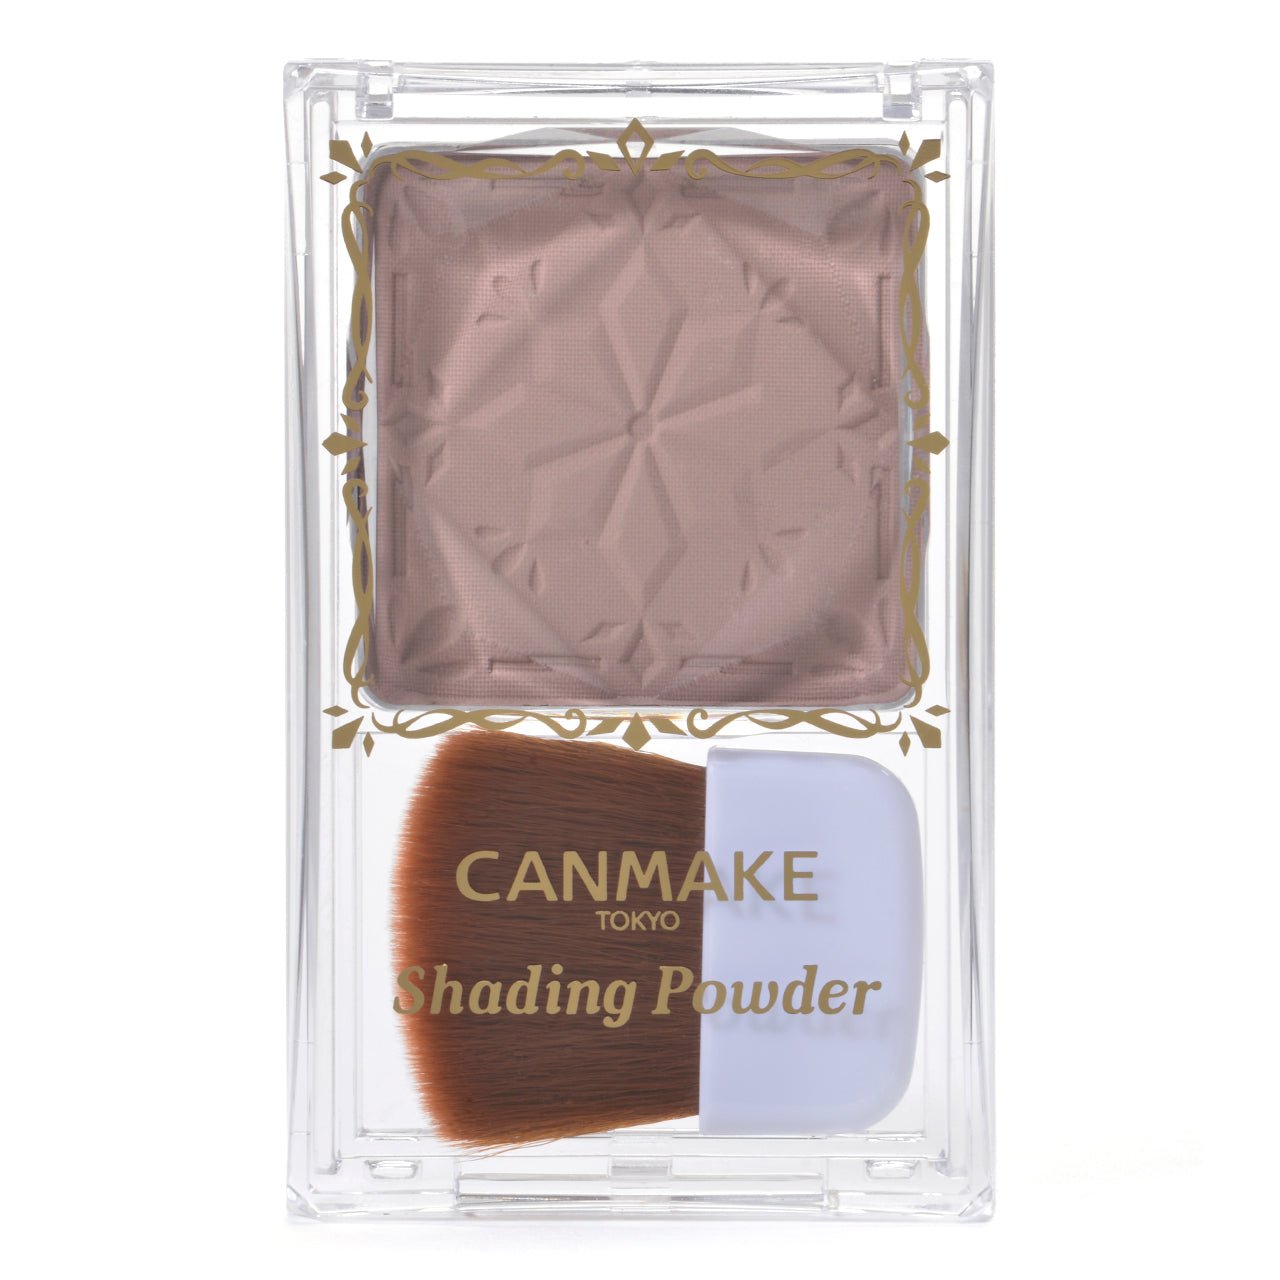 Canmake Shading Powder - Ichiban Mart